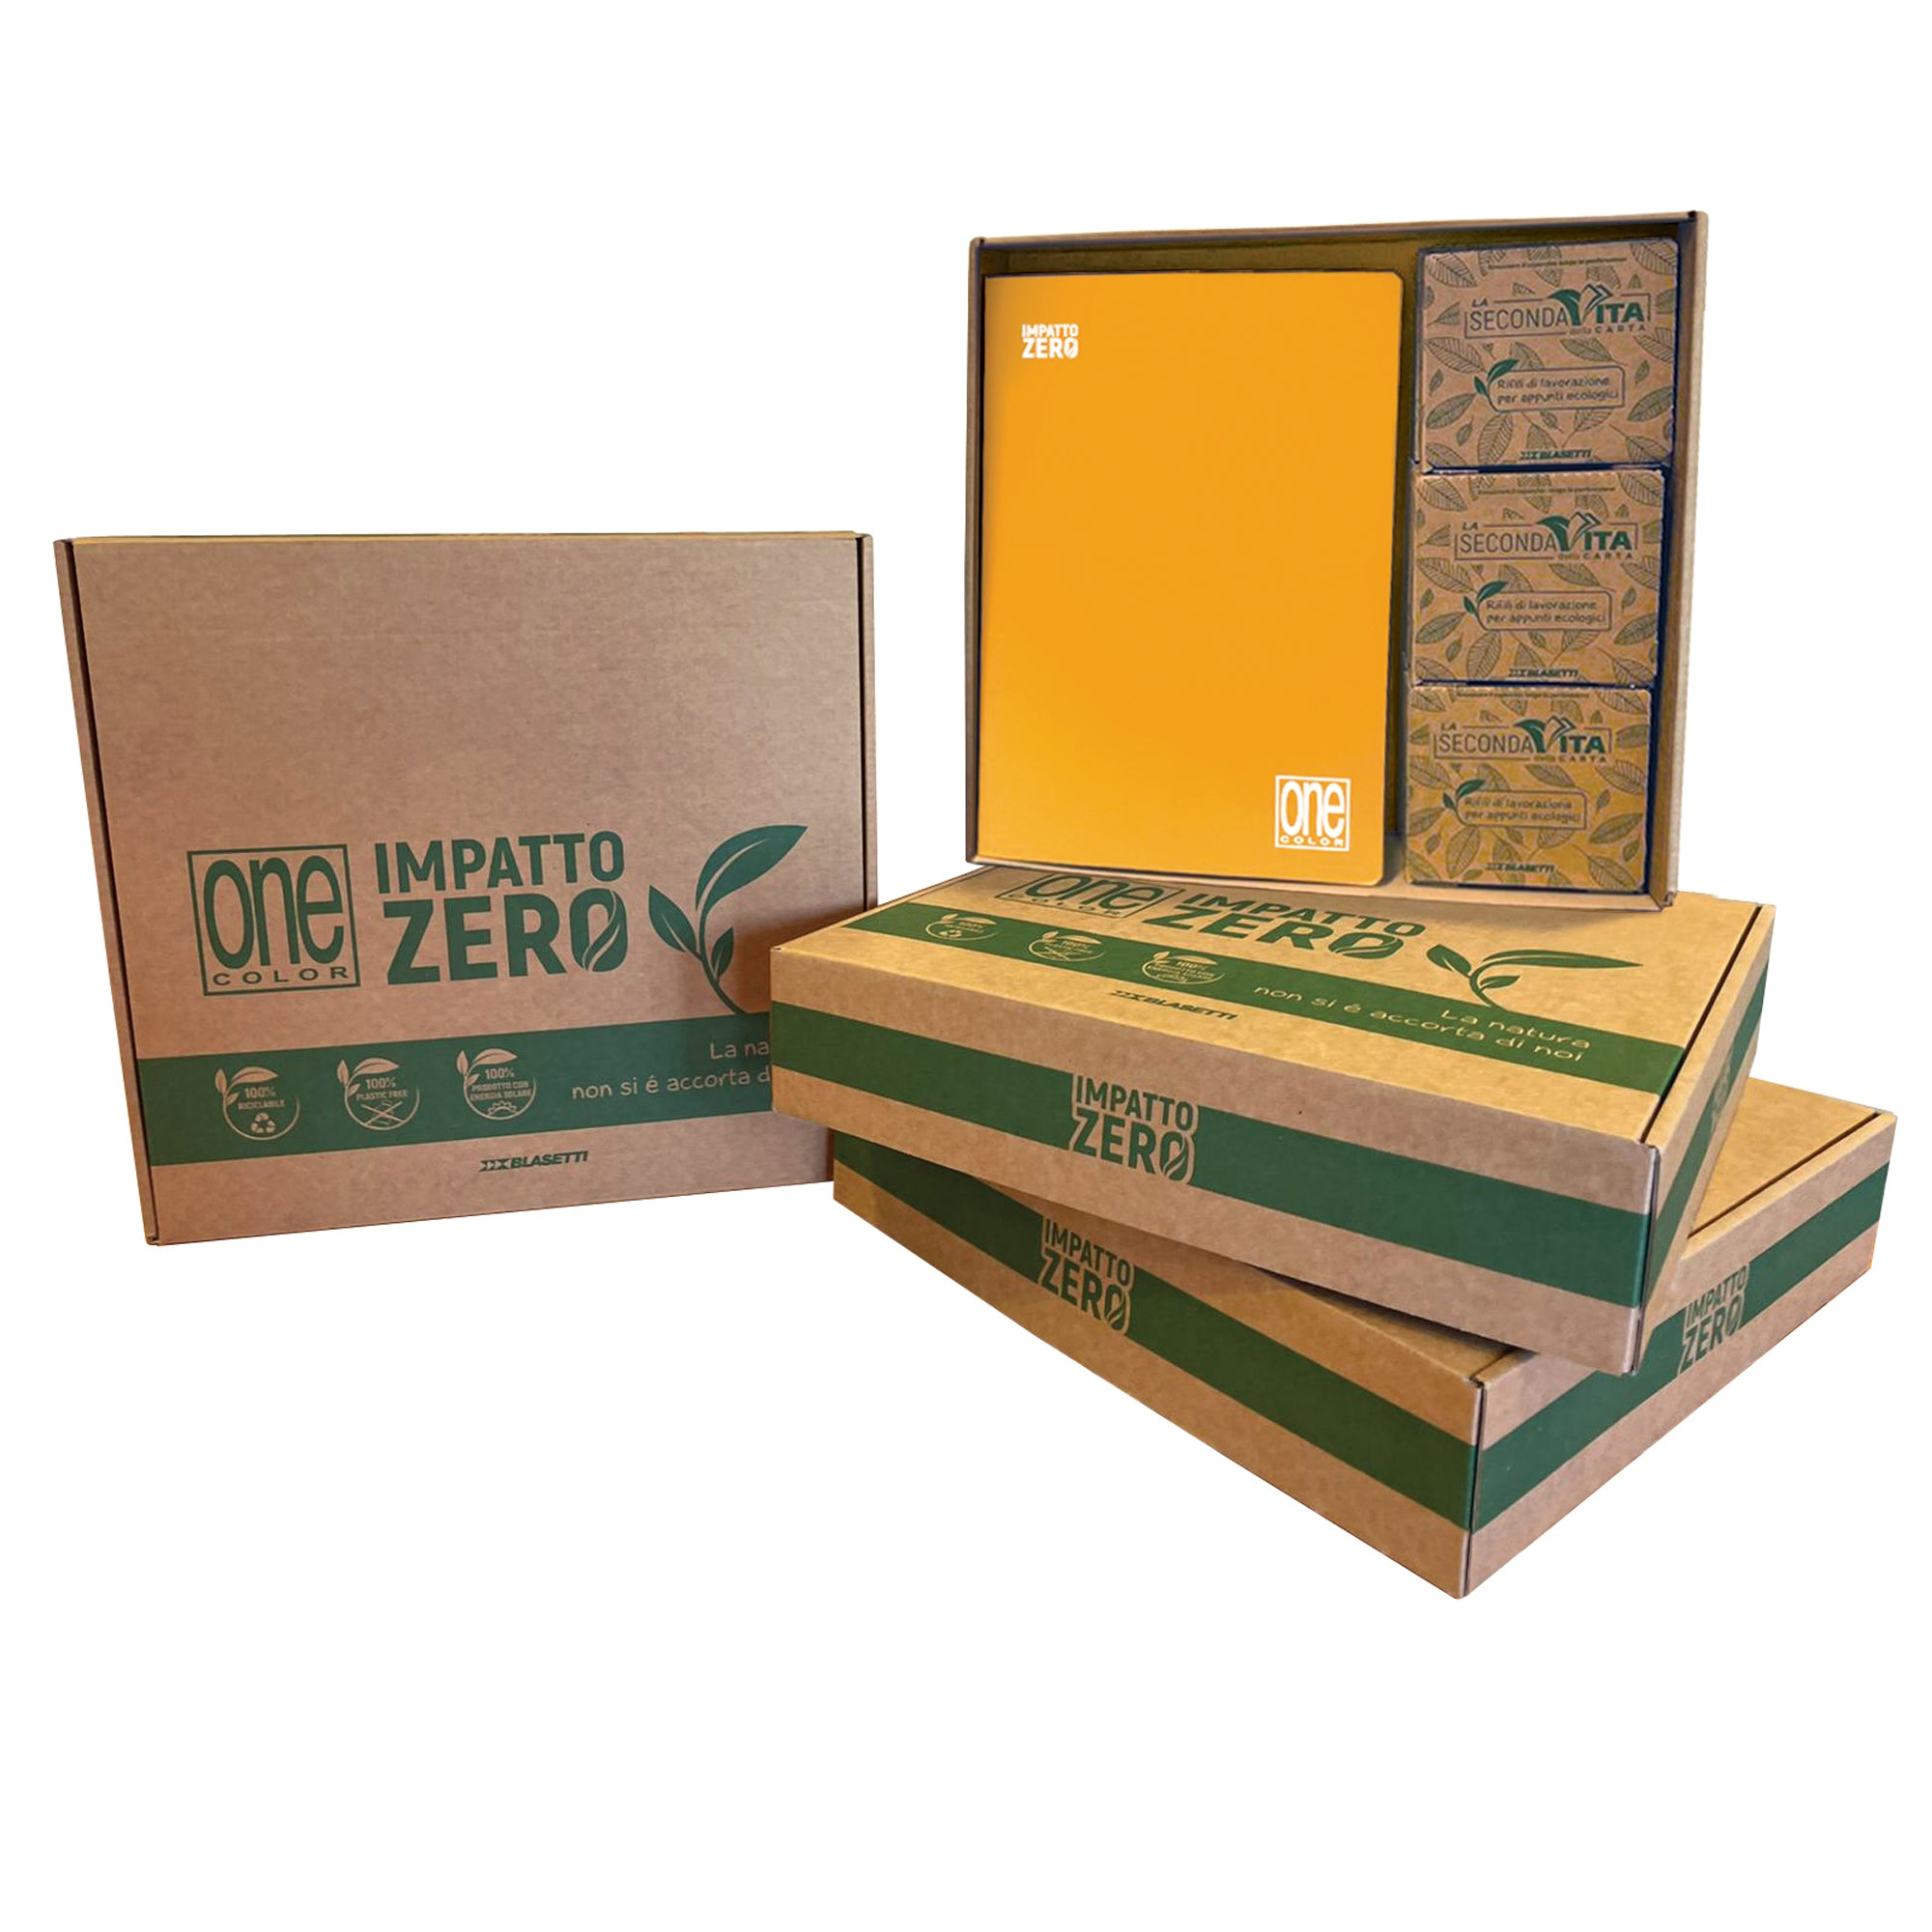 blasetti-box-12-maxiquaderni-onecolor-impatto-zero-201ff-5mm6-scat-foglietti